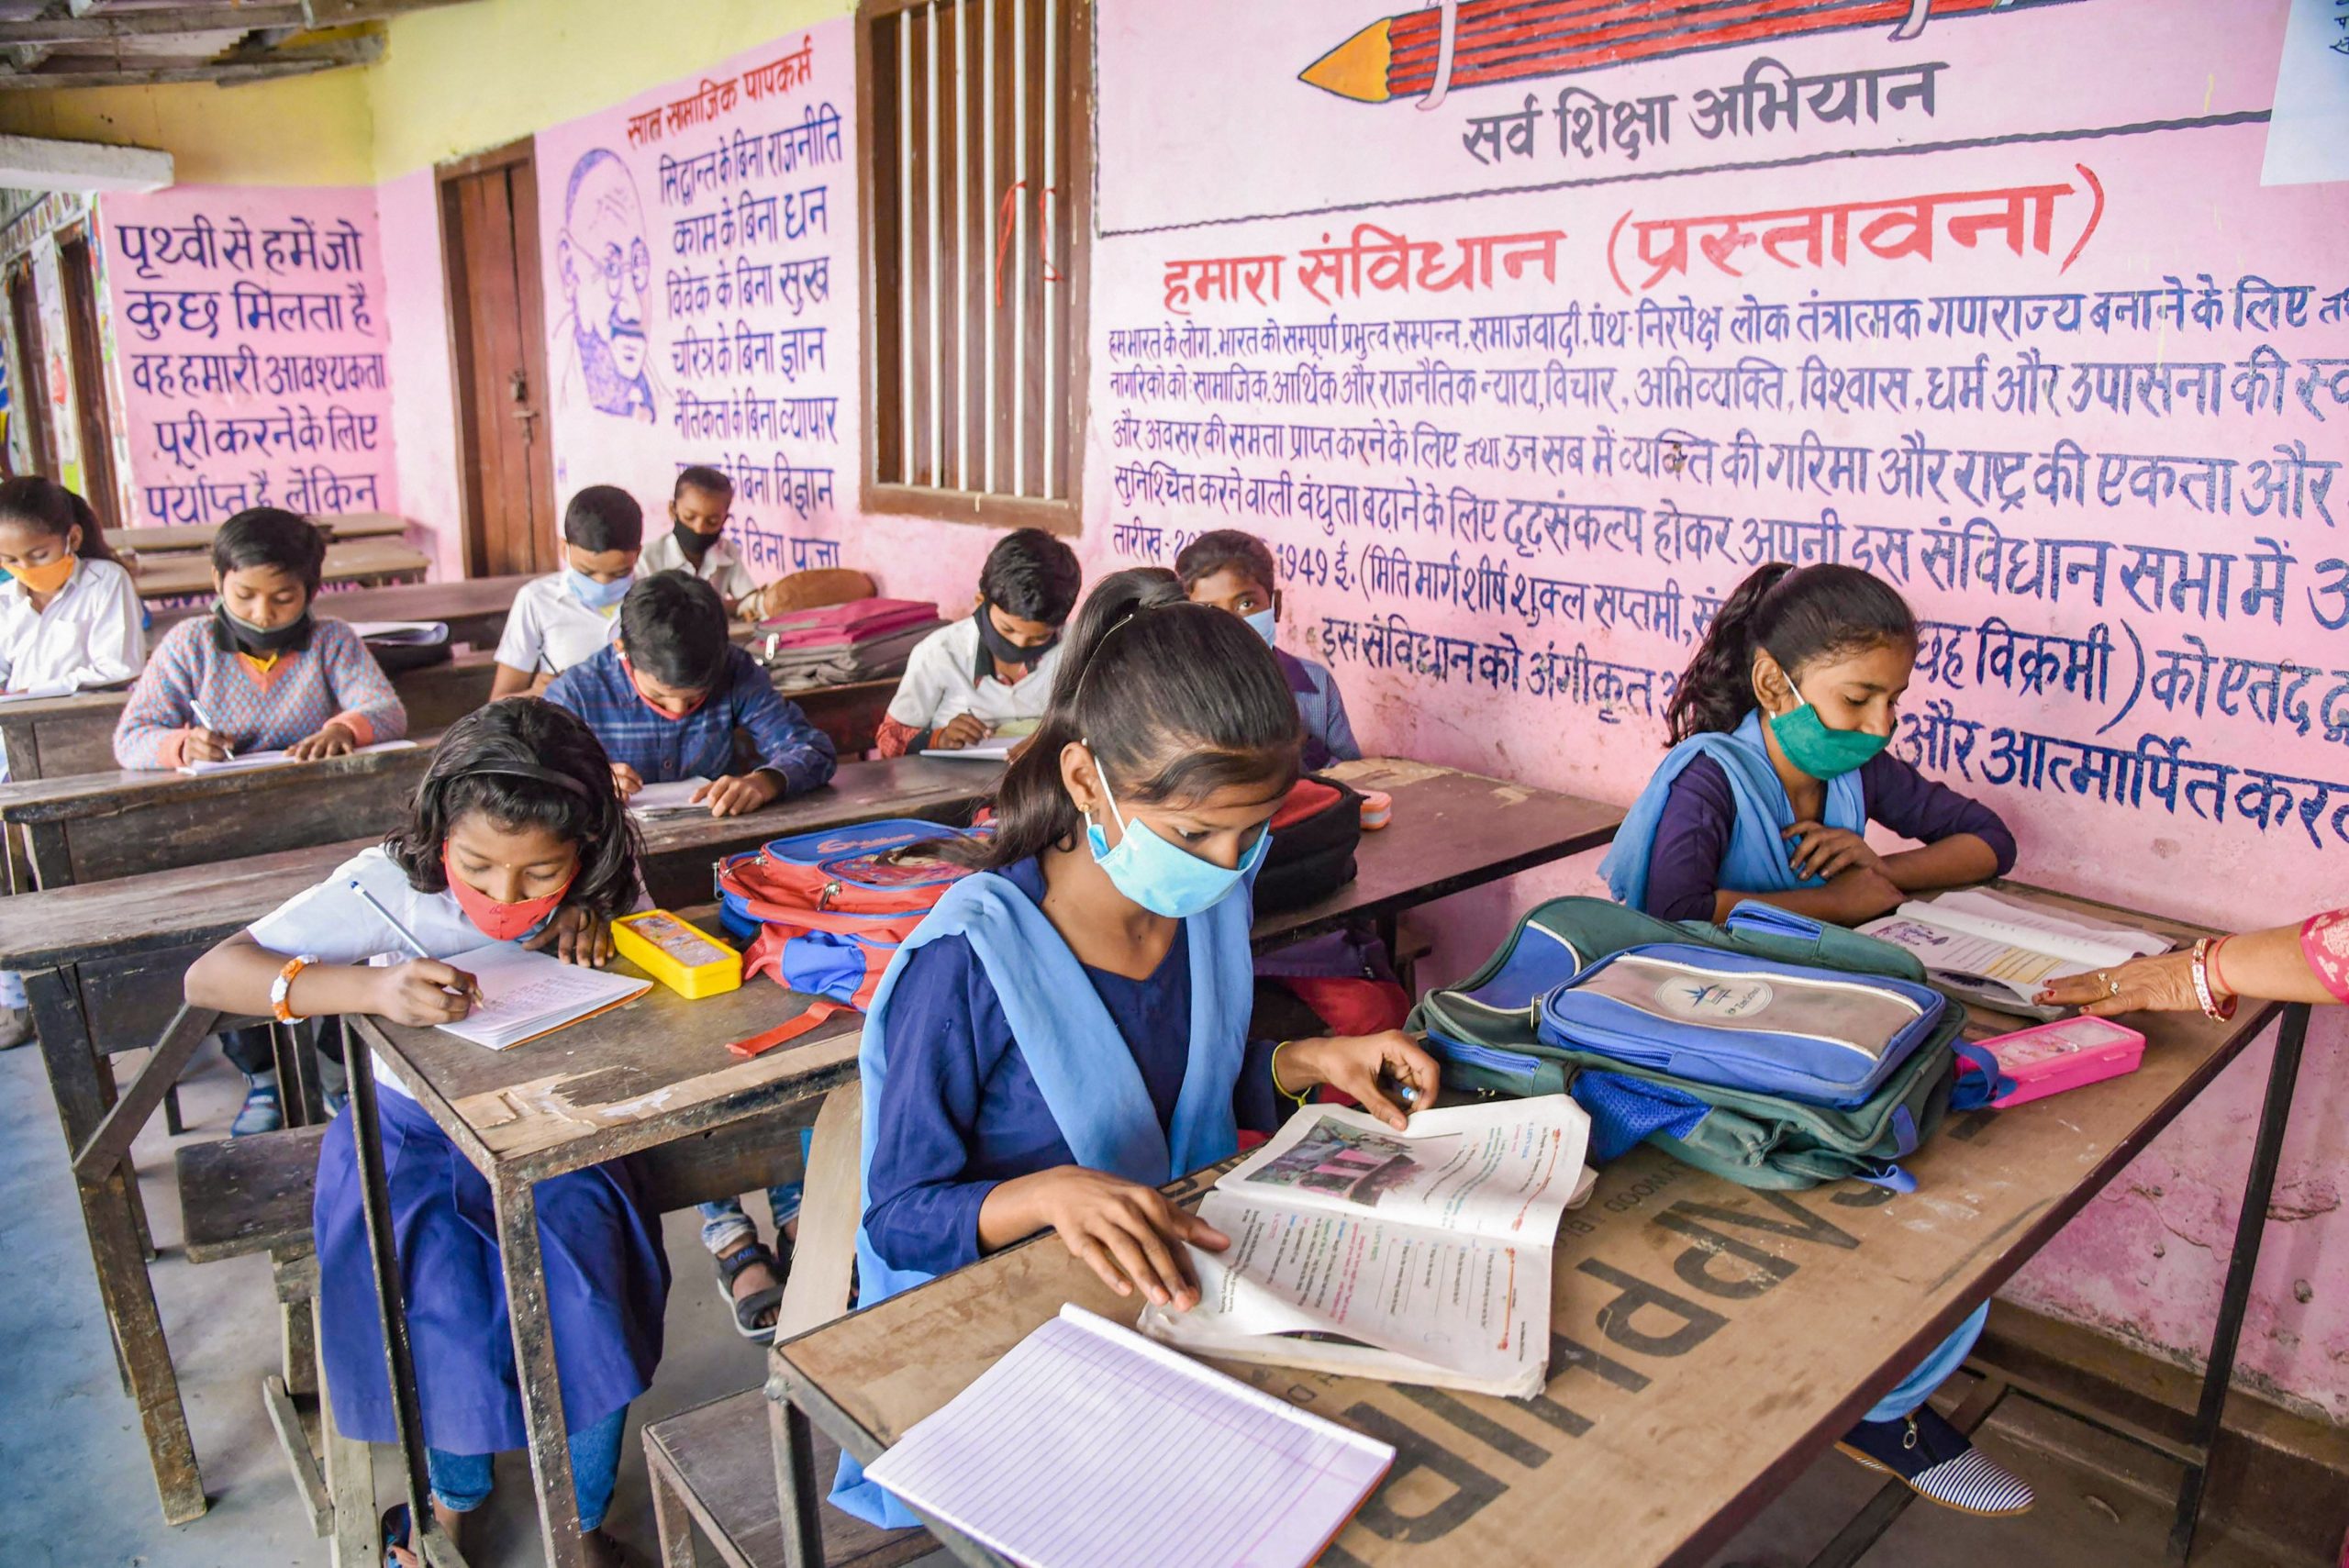 राजस्थान में 5वीं तक के बच्चों की नहीं होगी परीक्षा, अगली कक्षा के लिए प्रोन्नत किया जाएगा